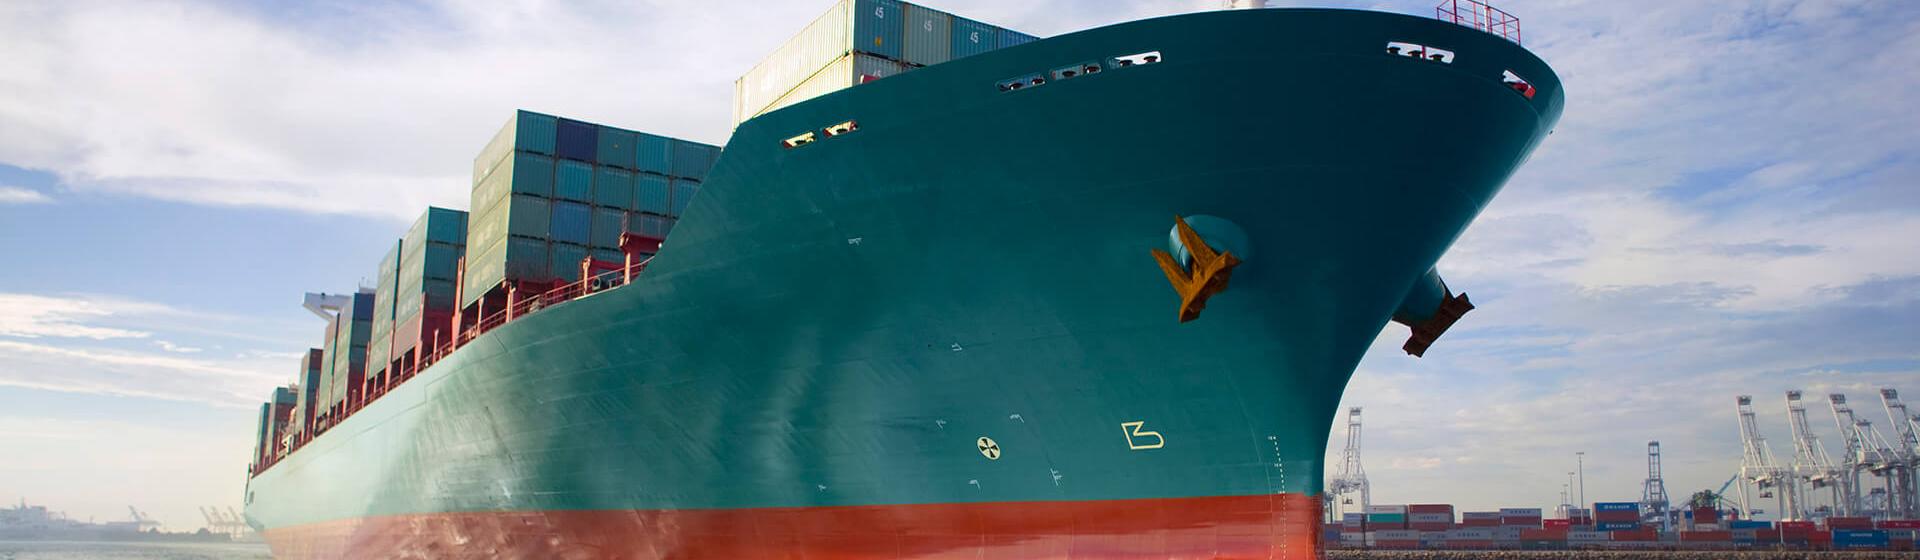 et containerskip som beveger seg gjennom en havn med kraner i bakgrunnen, sett fra havnivå.